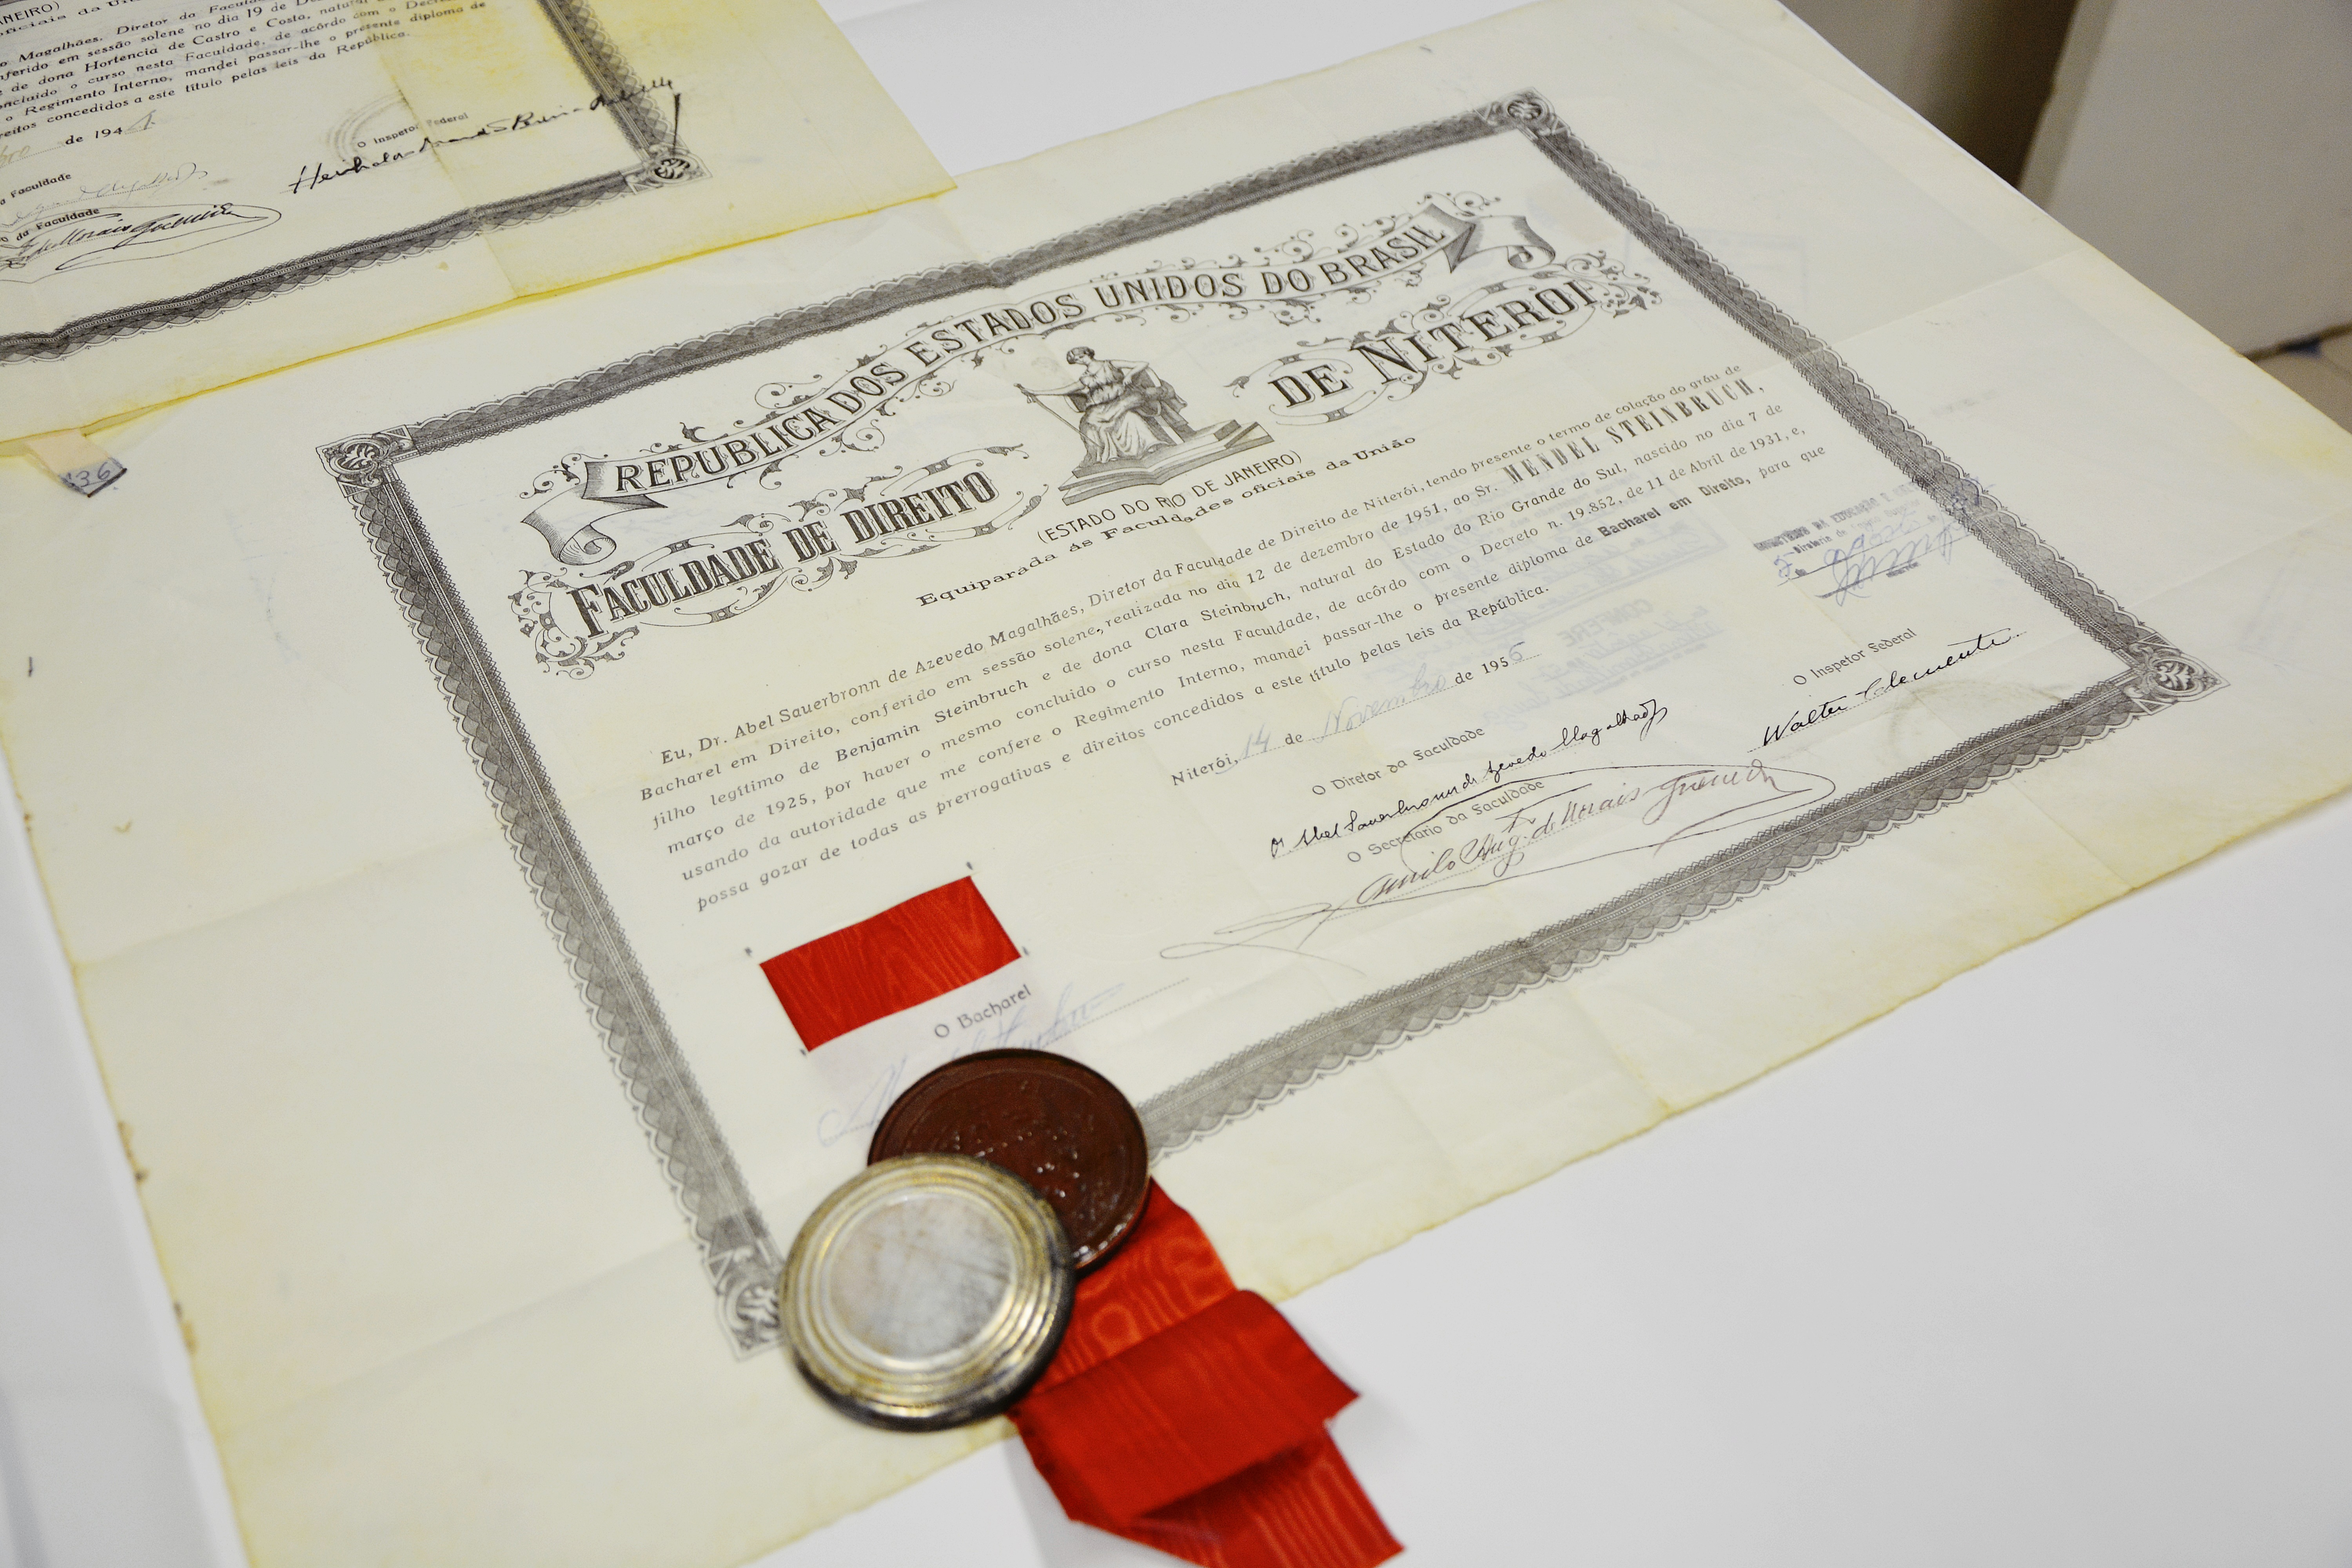 Diploma, com selo aposto em metal e fita vermelha, da Faculdade de Direito de Niterói da década de 1950